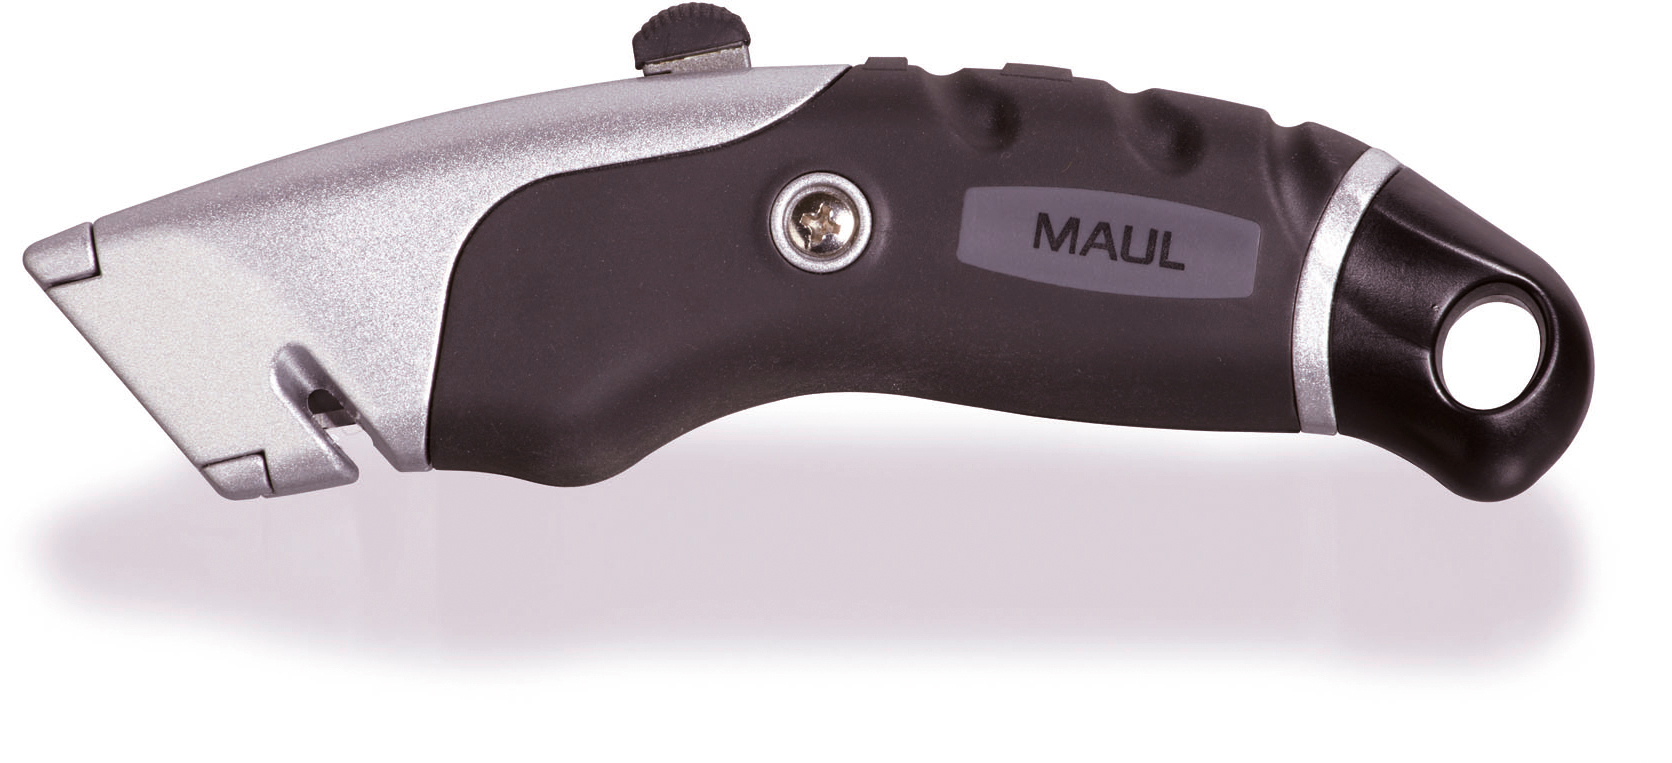 MAUL Cutter 19mm 7782290 Expert Expert